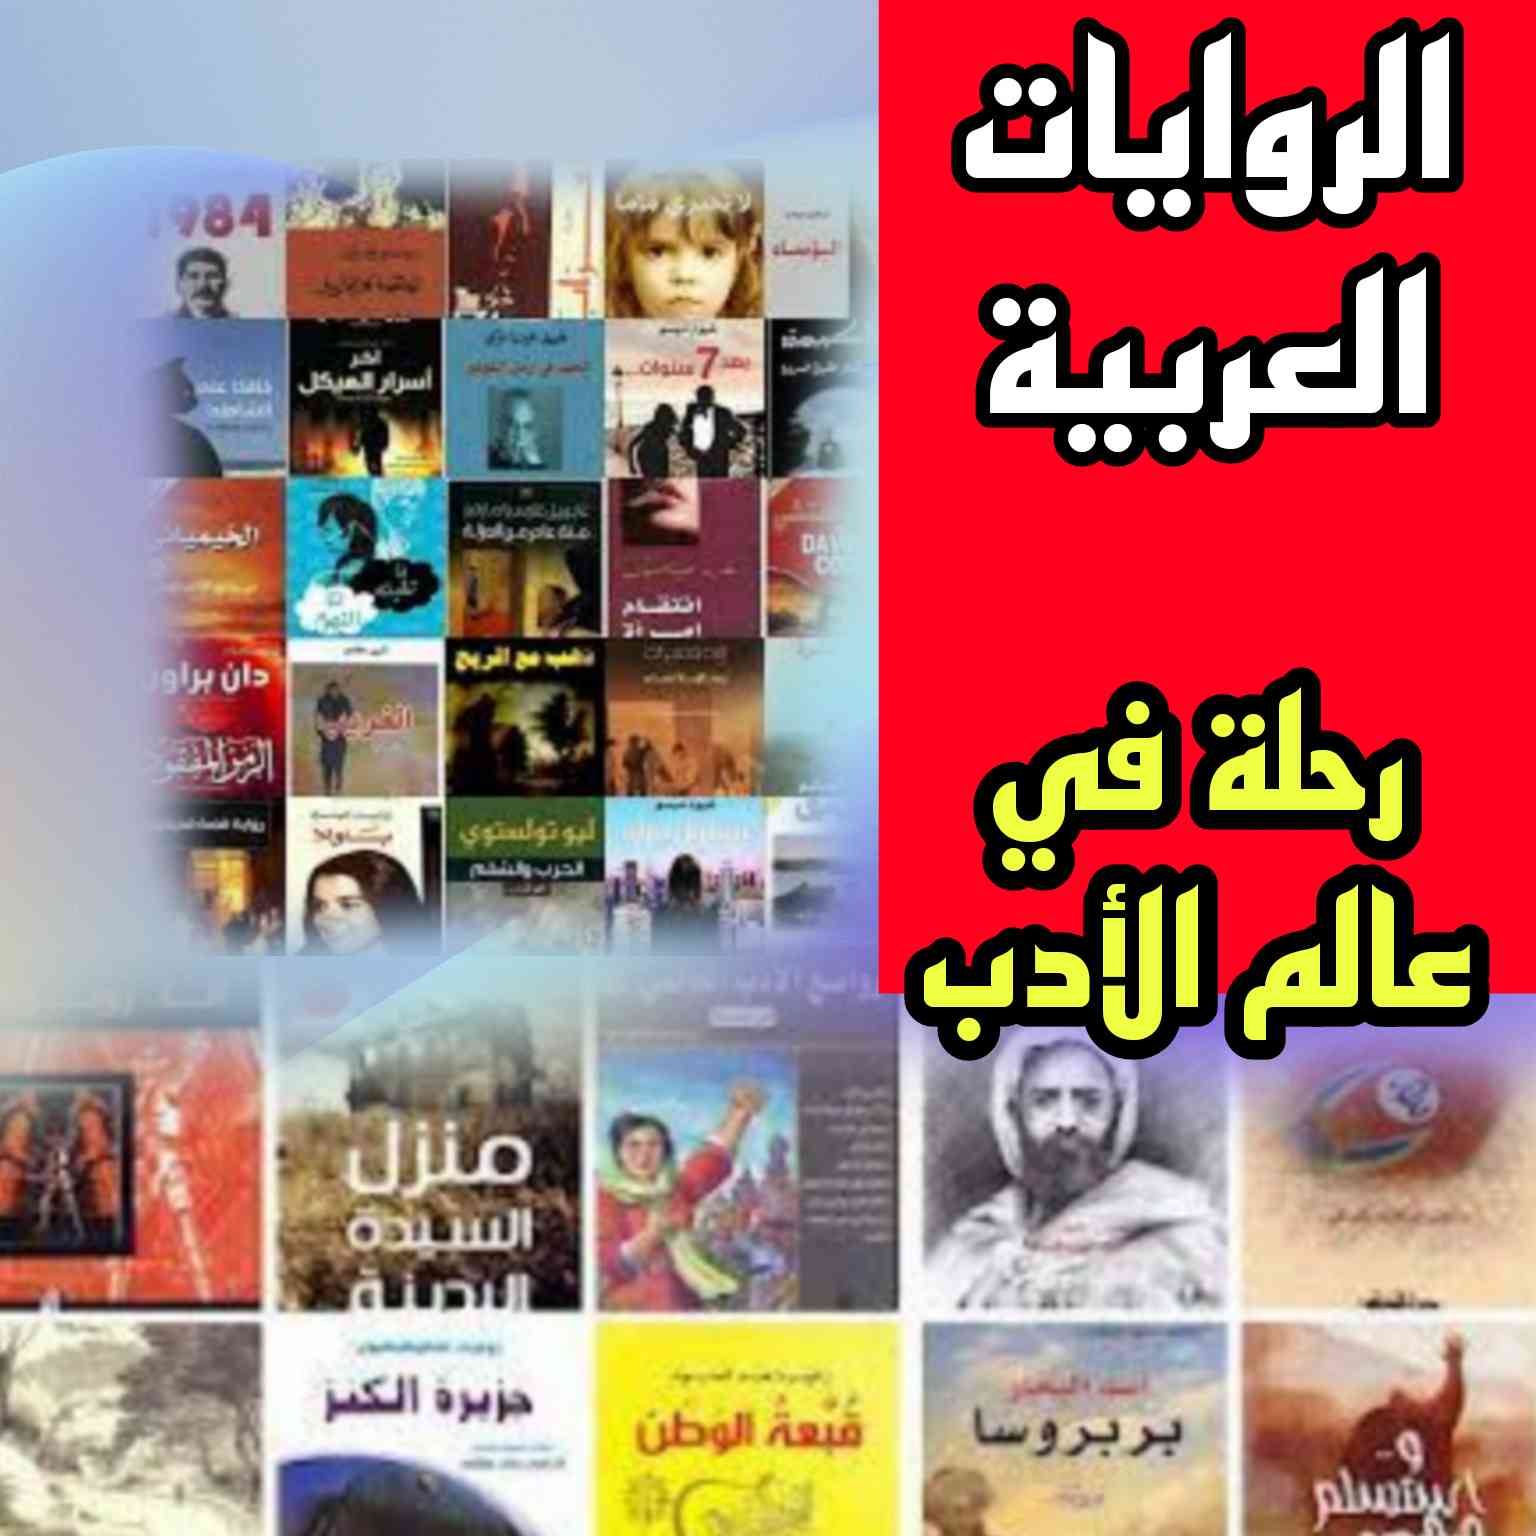 الروايات العربية: رحلة في عالم الأدب مقدمة